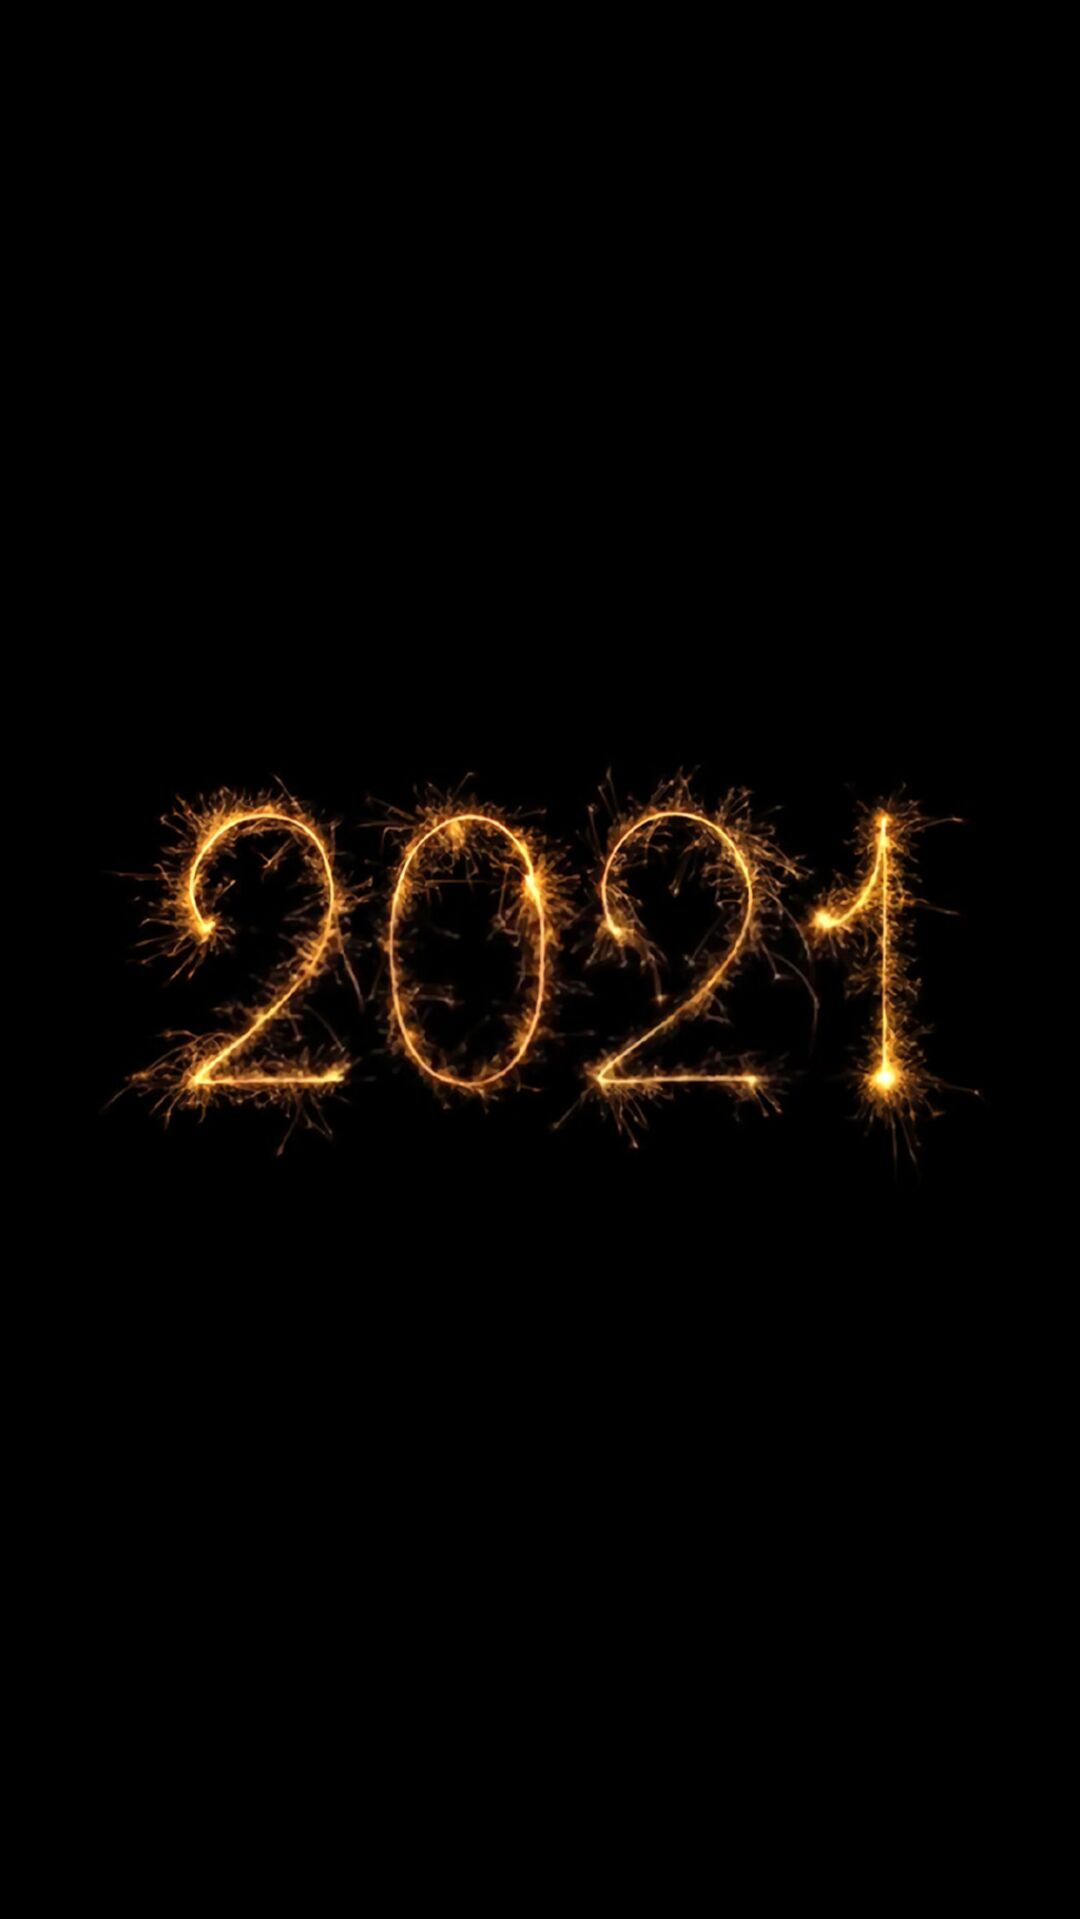 2021 带火的文字 黑色背景 简约 简洁2021文字手机壁纸图片